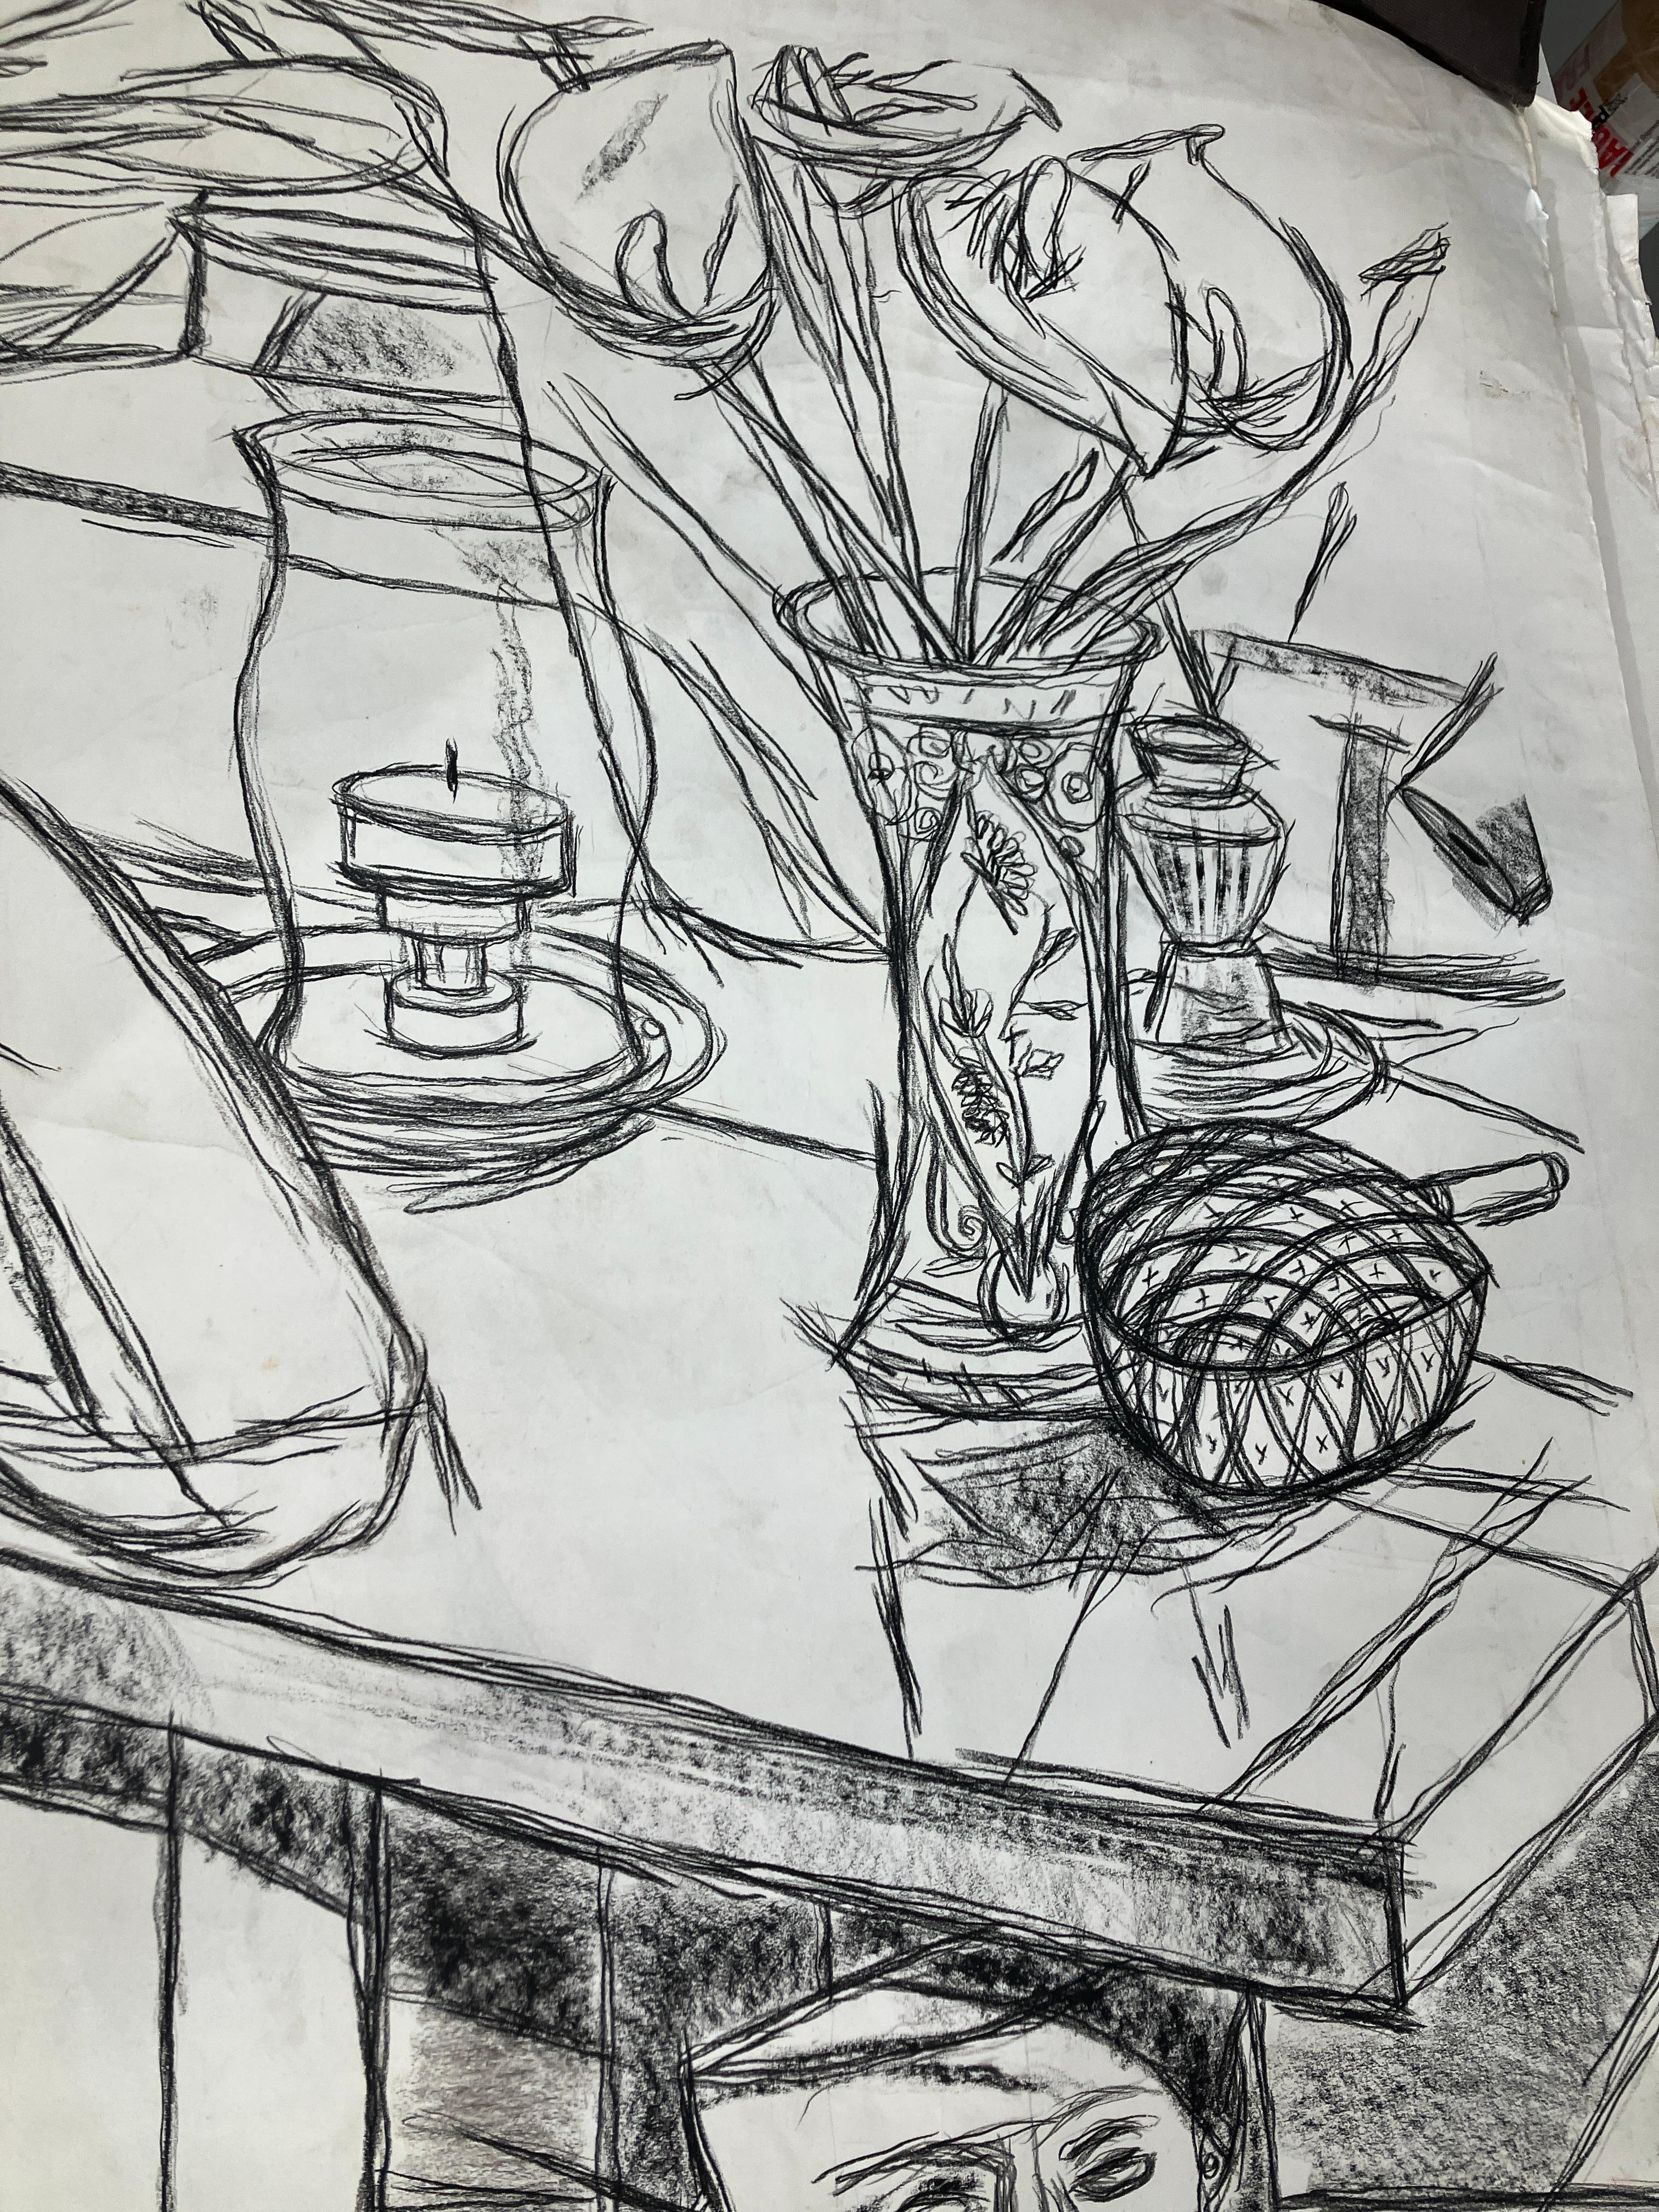 Le vieil homme de la dernière exposition, 2016 par Celso Castro-Daza
Crayon sur papier d'archives
Taille du papier : 59 H in. x 43 in. W 
Taille de l'image : 54 H in. x 40 in. W 

Au dos du tableau :
Jairo, 2016
Aquarelle et encre sur papier